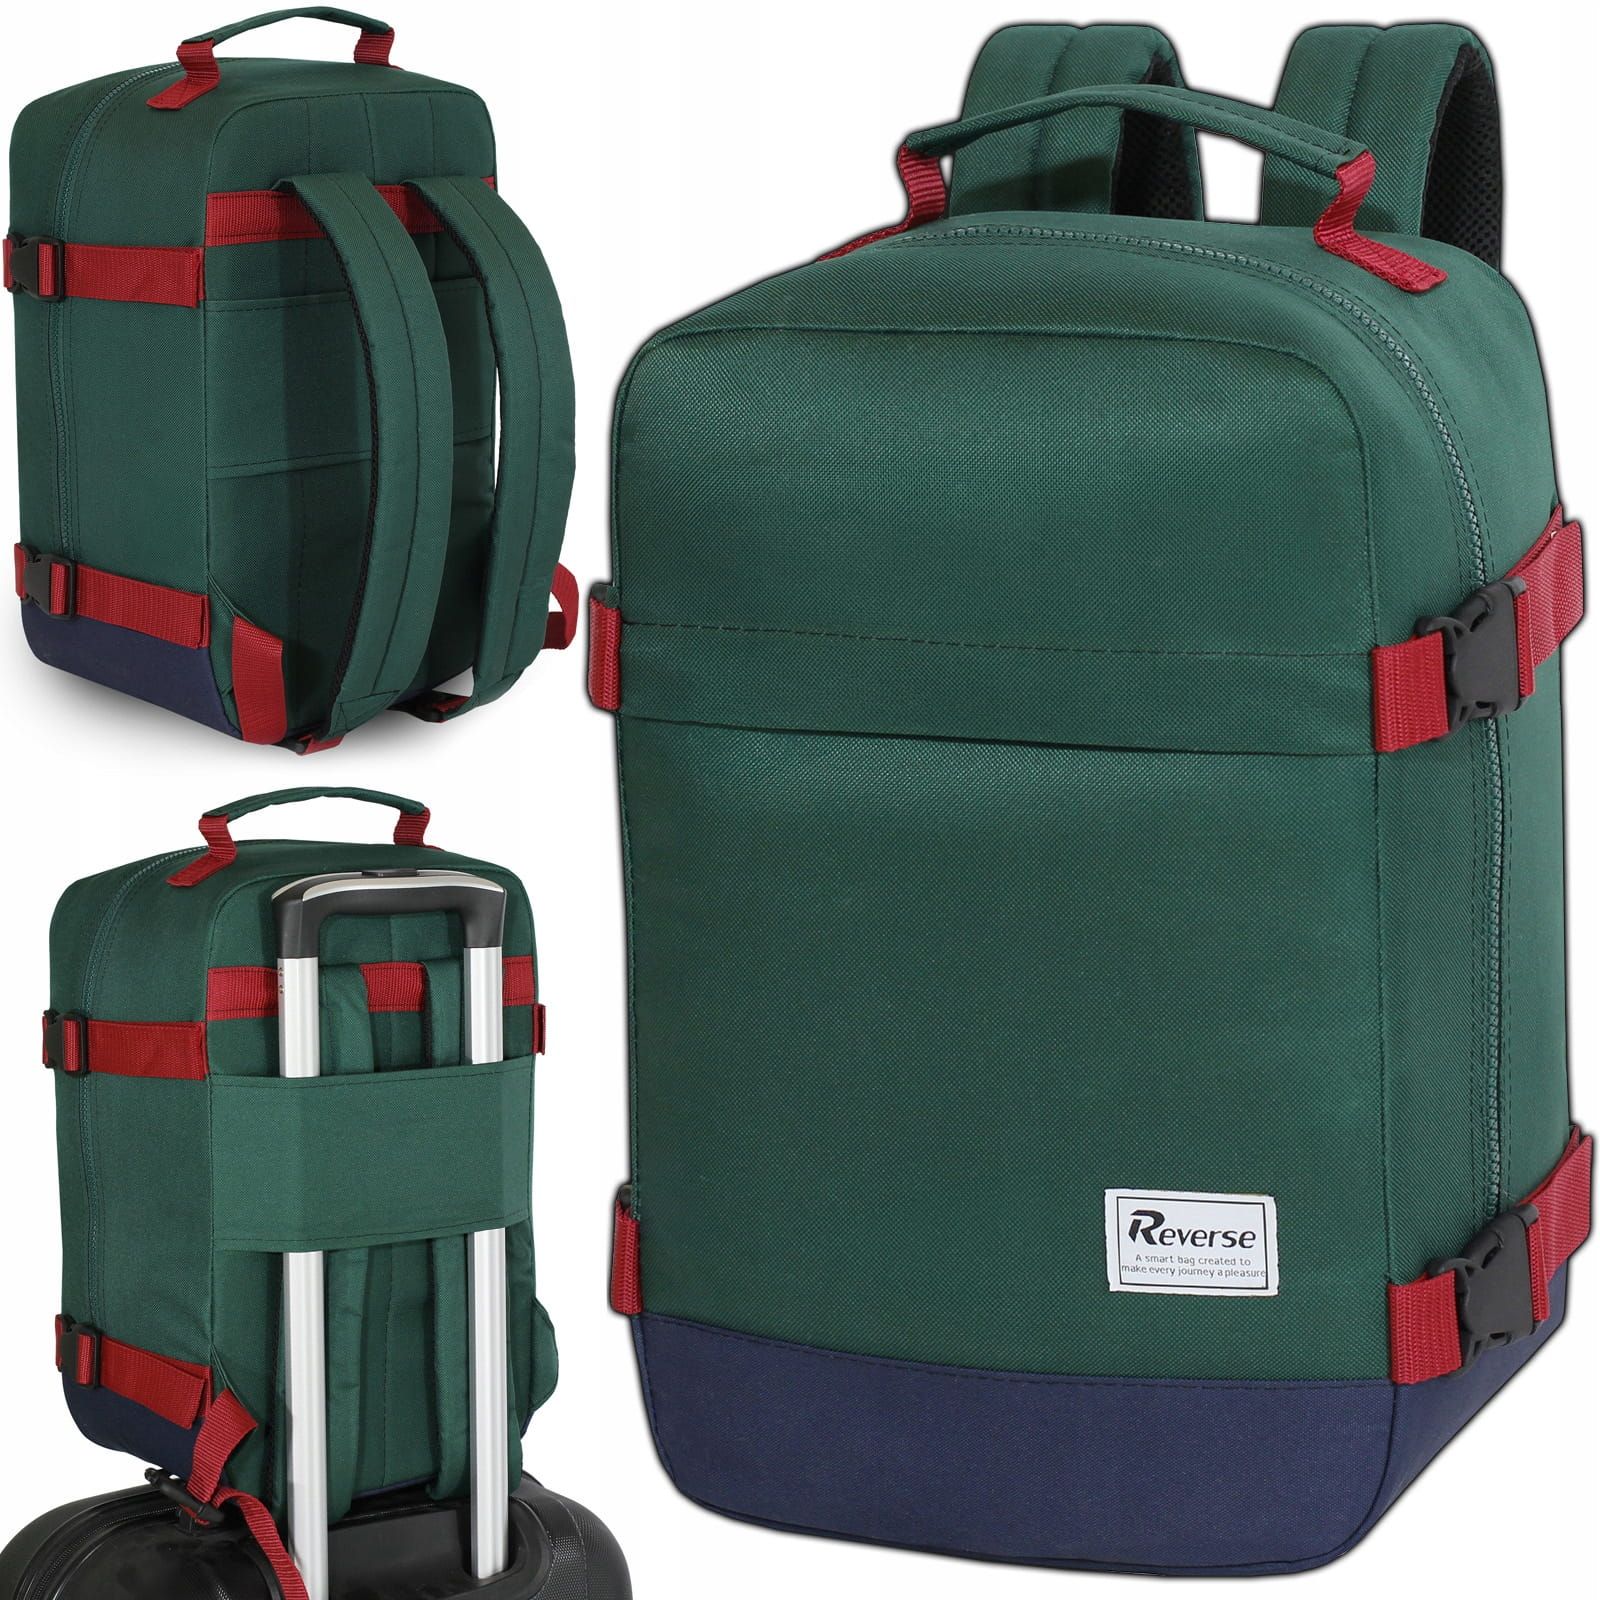 Reverse Příruční zavazadlo - batoh pro RYANAIR 2069 40x25x20 GREEN